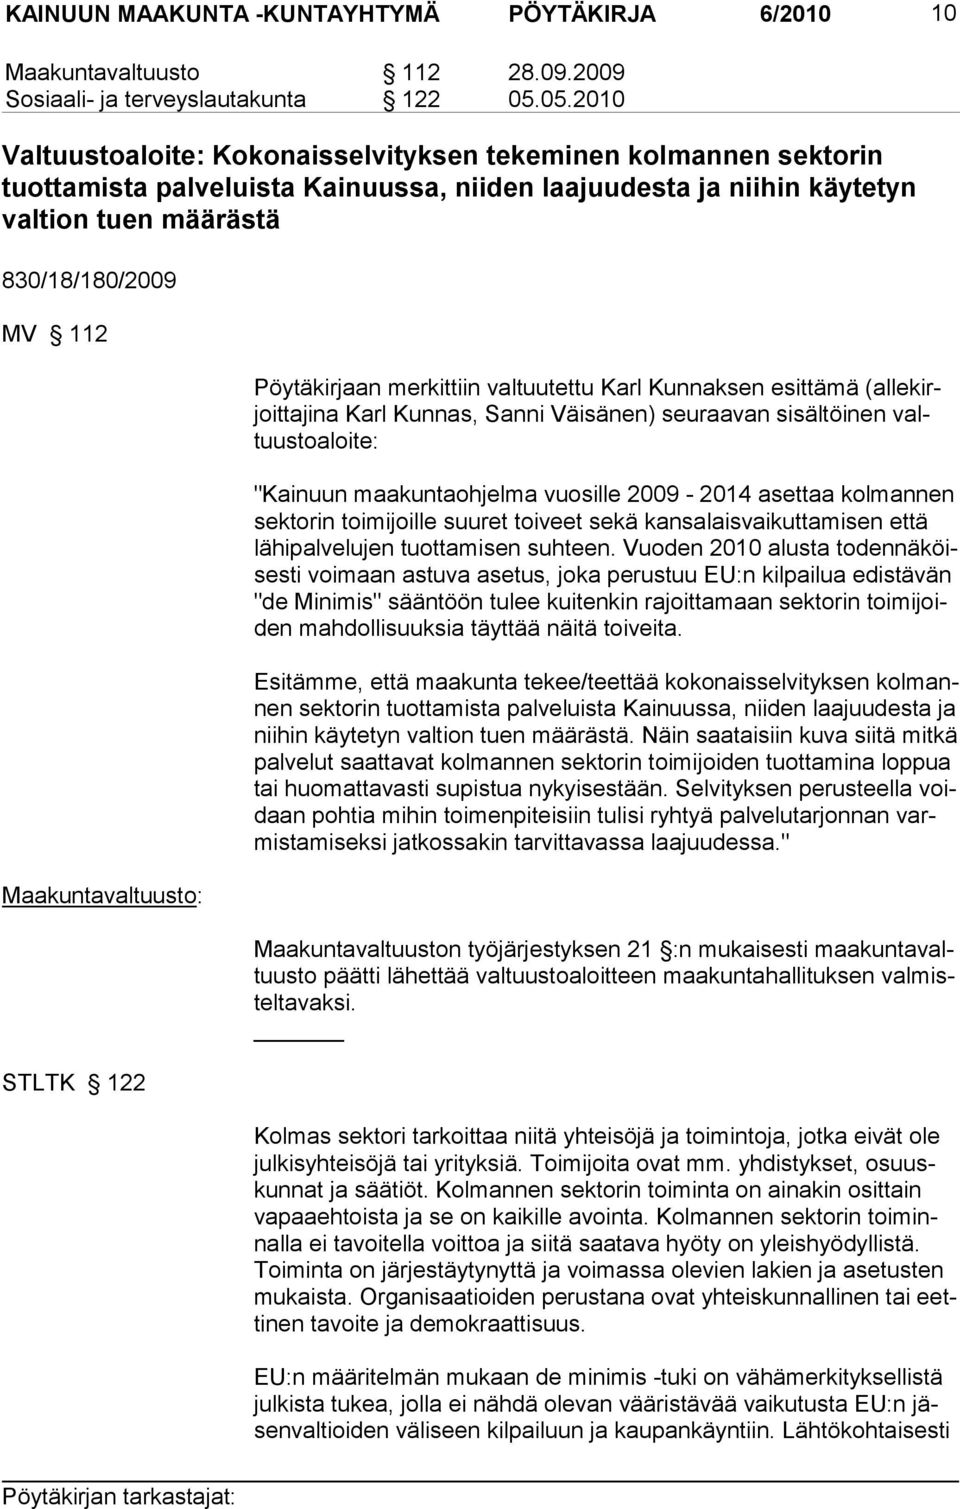 Maakuntavaltuusto: STLTK 122 Pöytäkirjaan merkittiin valtuutettu Karl Kunnaksen esittämä (allekirjoittajina Karl Kunnas, Sanni Väisänen) seuraavan sisältöinen valtuustoaloite: "Kainuun